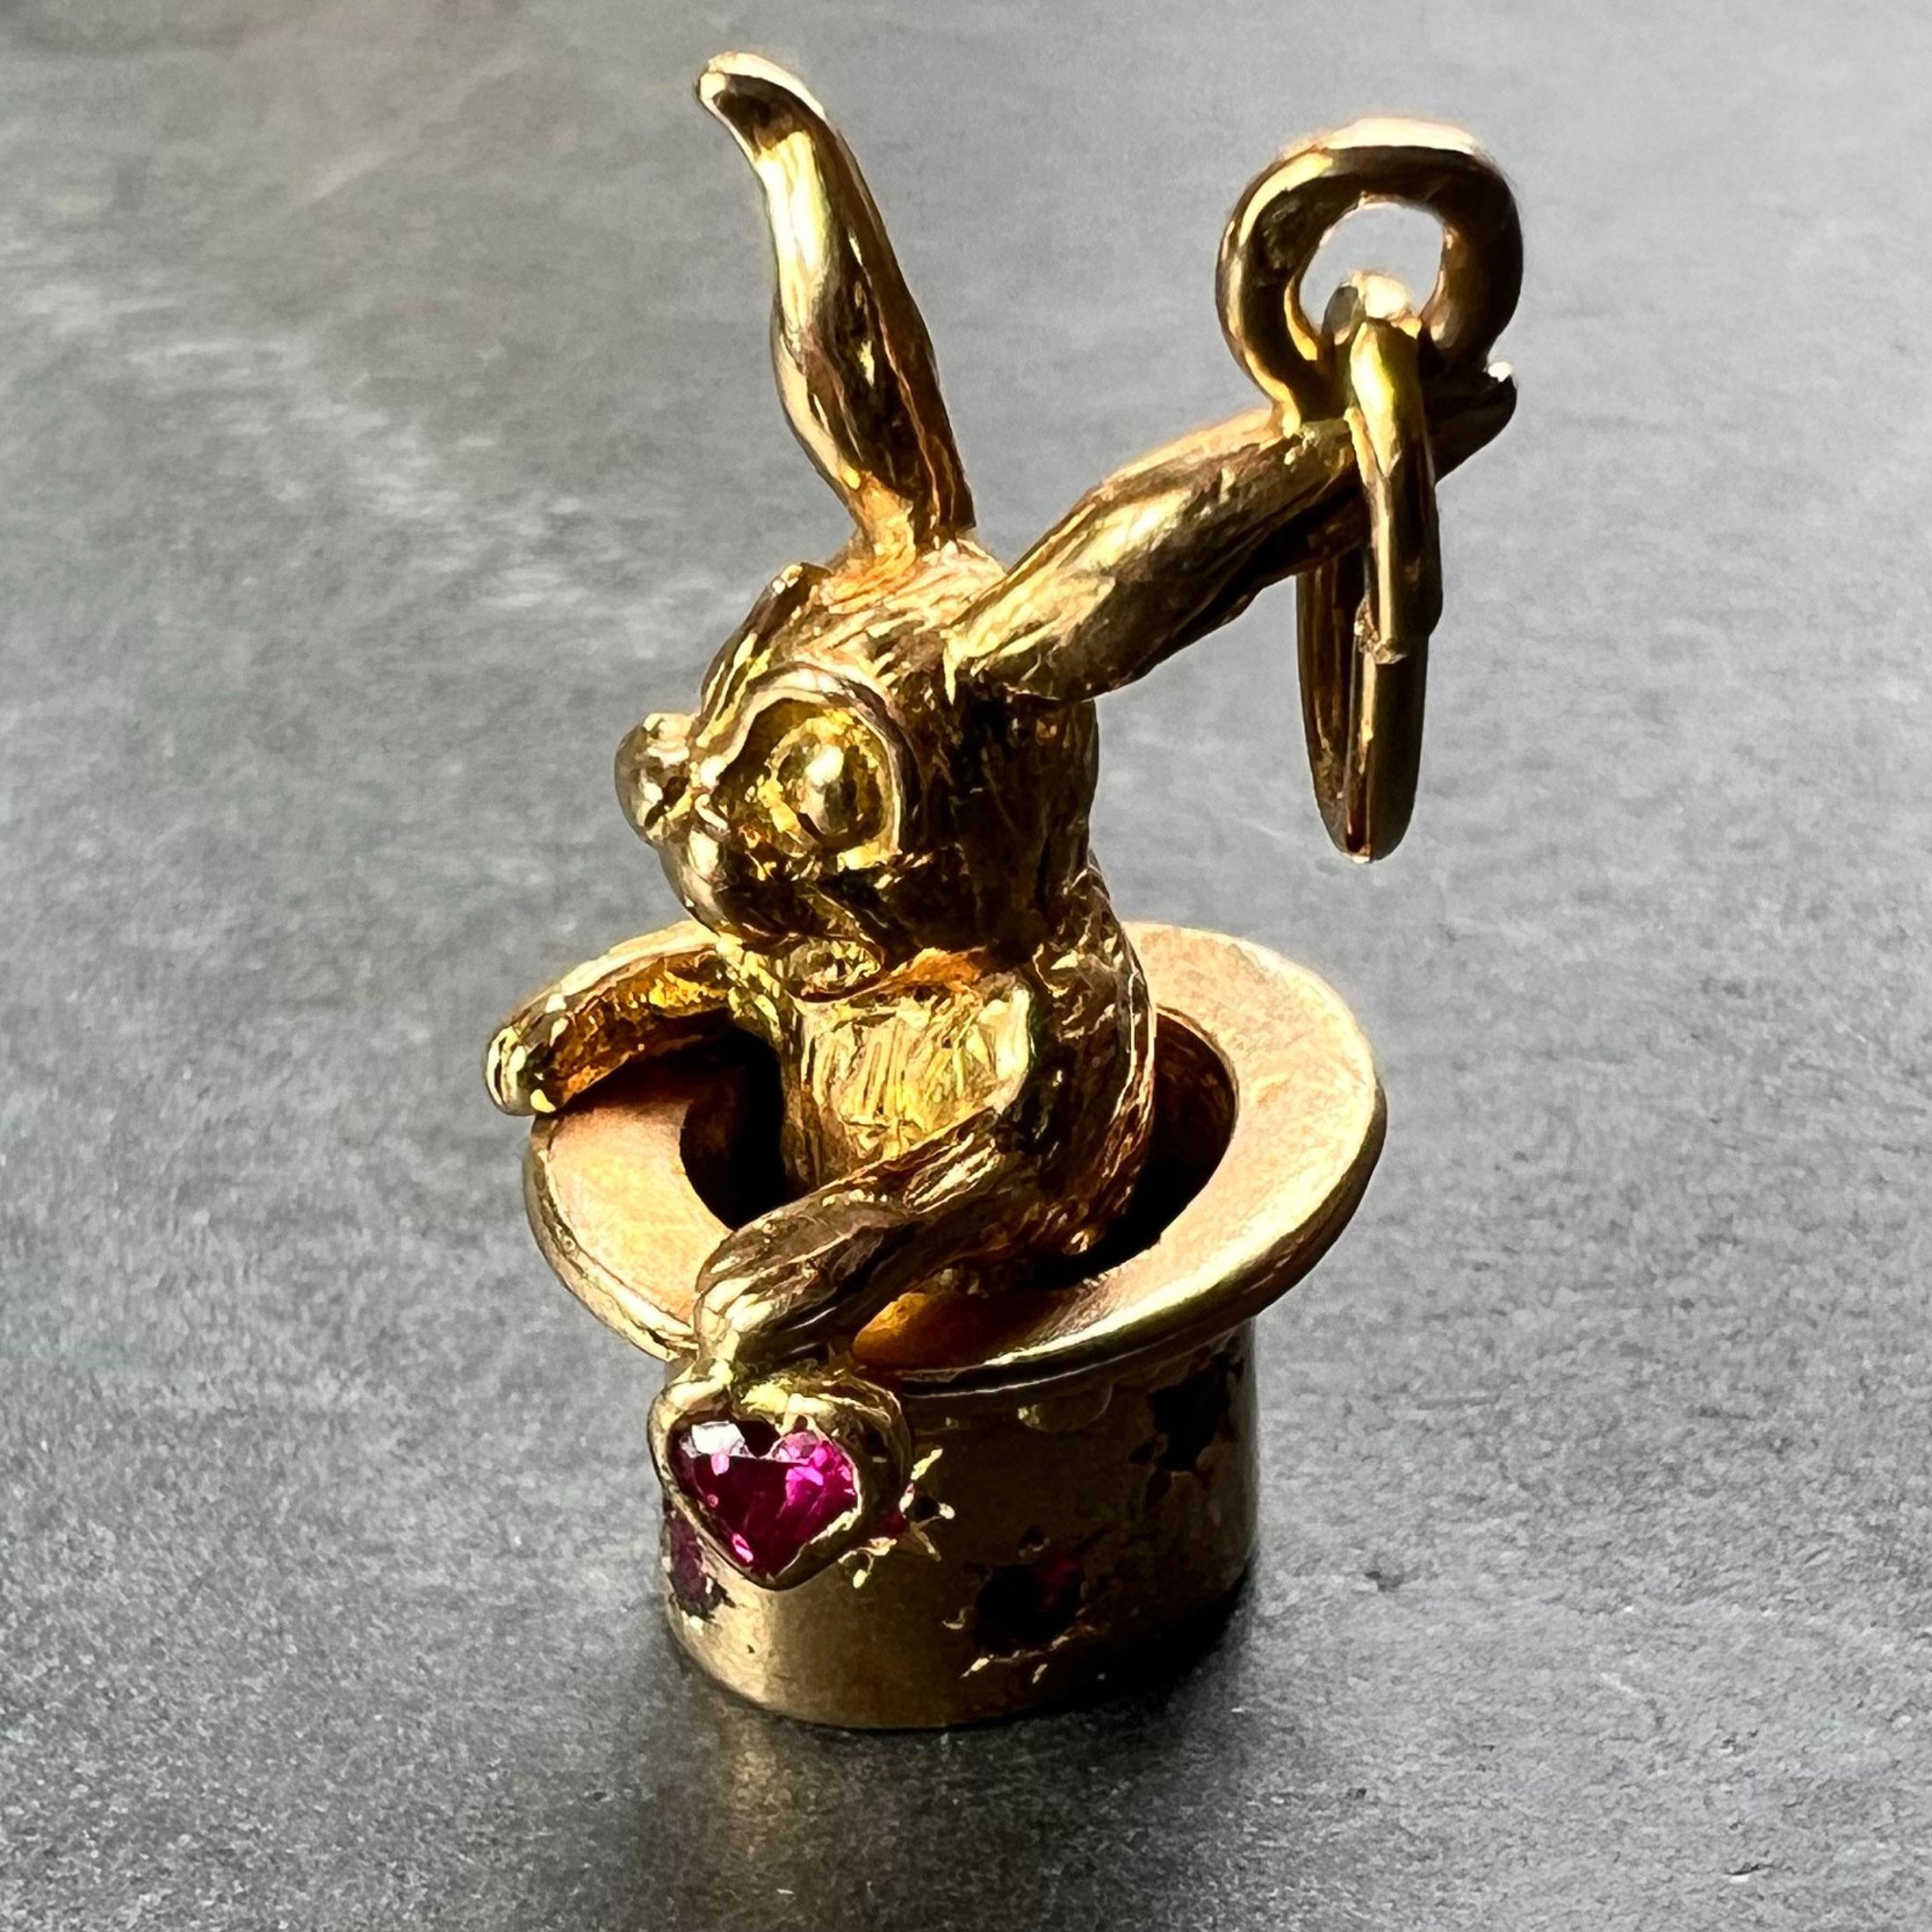 Pendentif à breloques en or jaune 18 carats (18K) français conçu comme un chapeau haut de forme de magicien serti de huit rubis ronds, contenant un lapin en mouvement tenant un cœur en rubis. Estampillé de la tête d'aigle pour l'or 18 carats et de